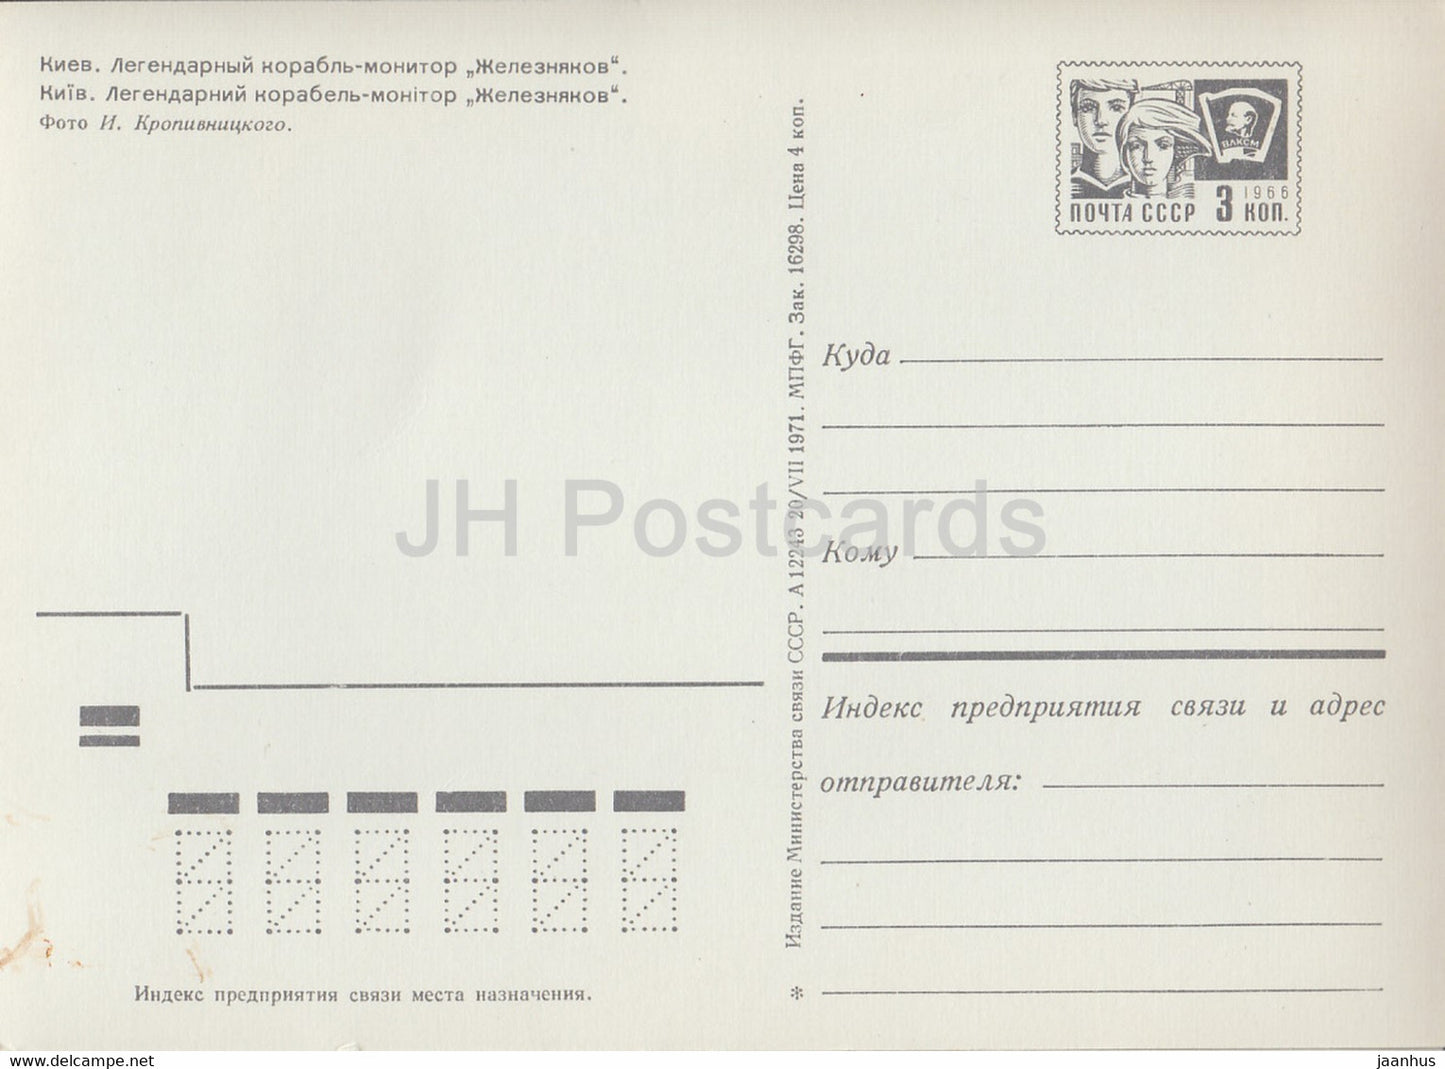 Kyiv - Kiev - legendary monitor ship Zheleznyakov - postal stationery - 1971 - Ukraine USSR - unused